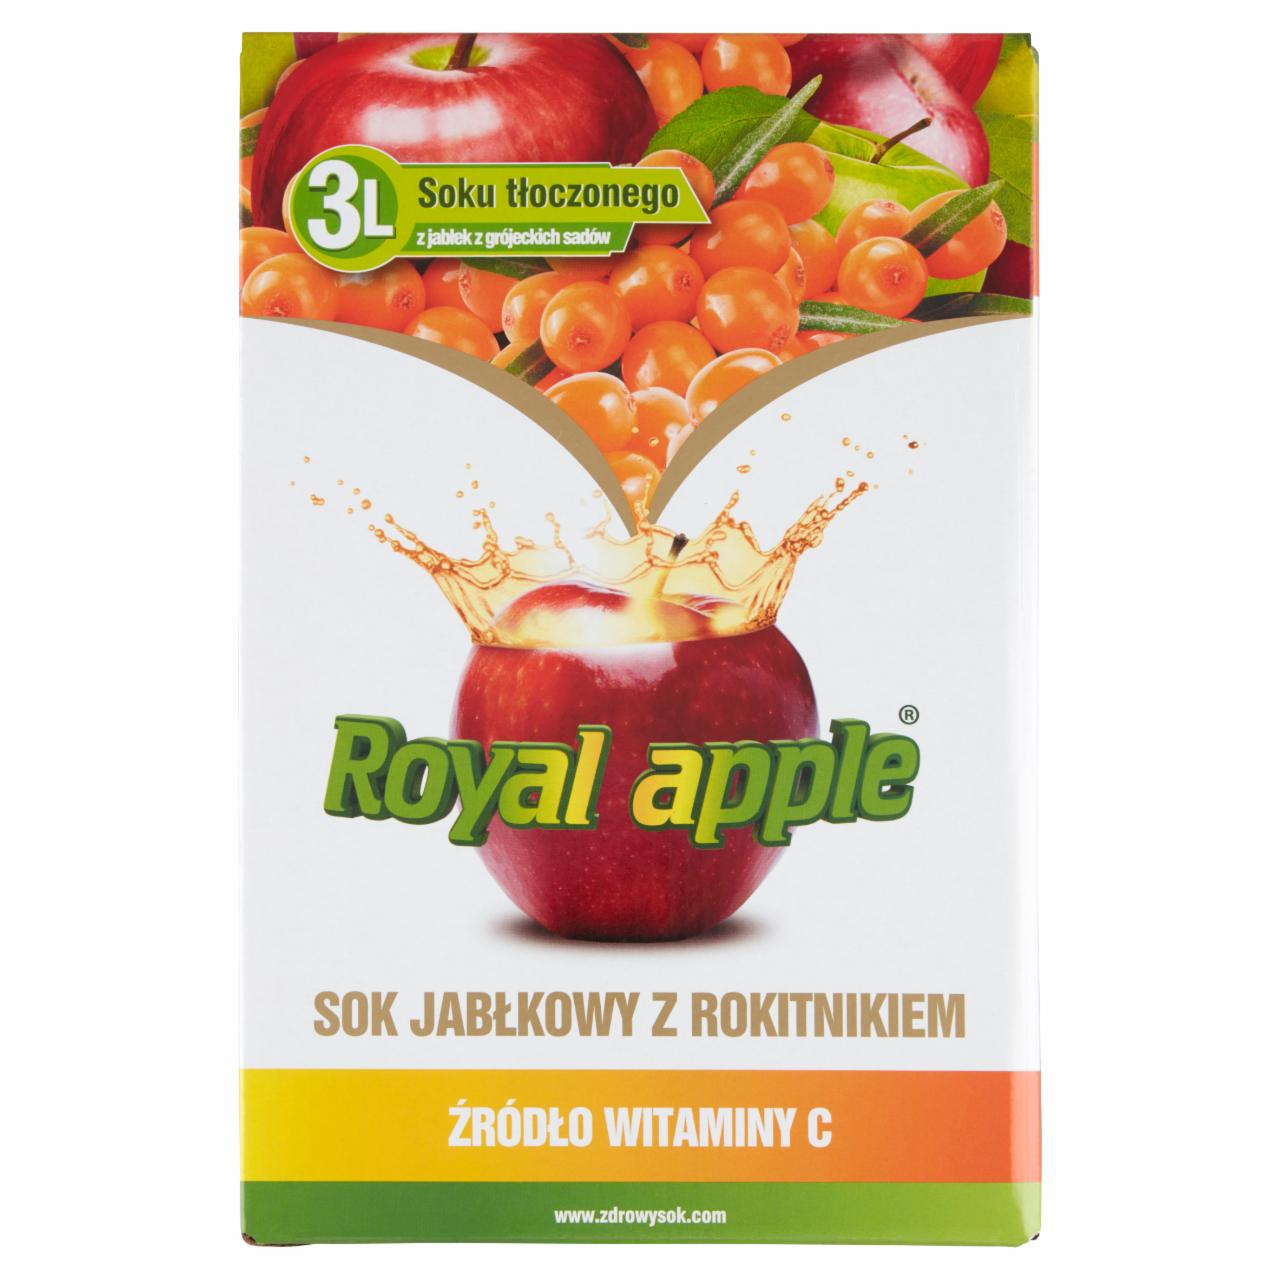 Zdjęcia - Royal apple Sok jabłkowy z rokitnikiem 3 l